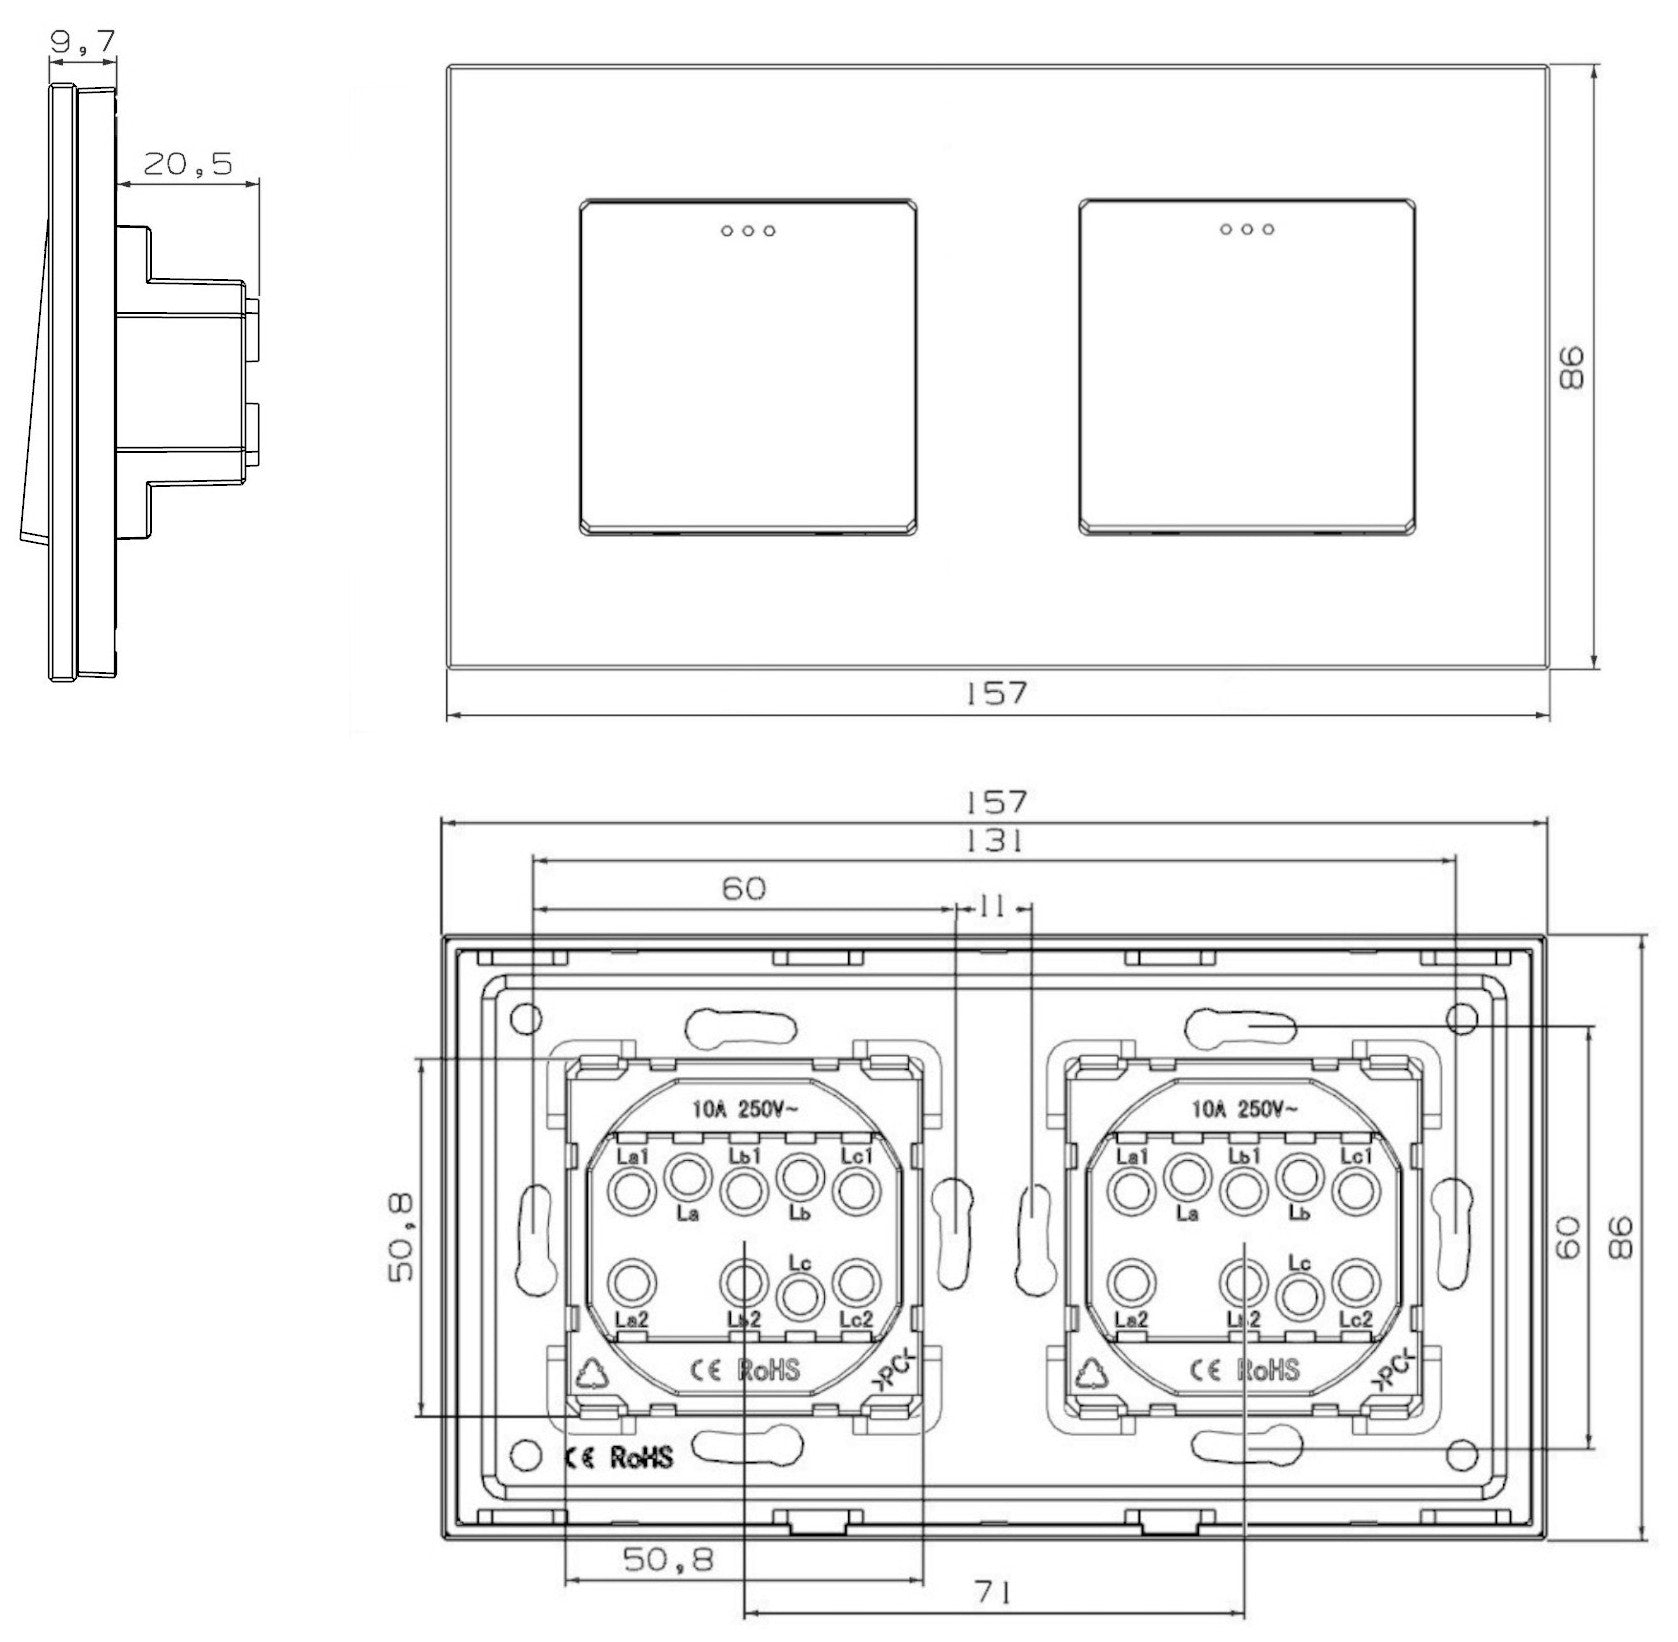 Interruptor mecánico de dos y uno (negro, vidrio)